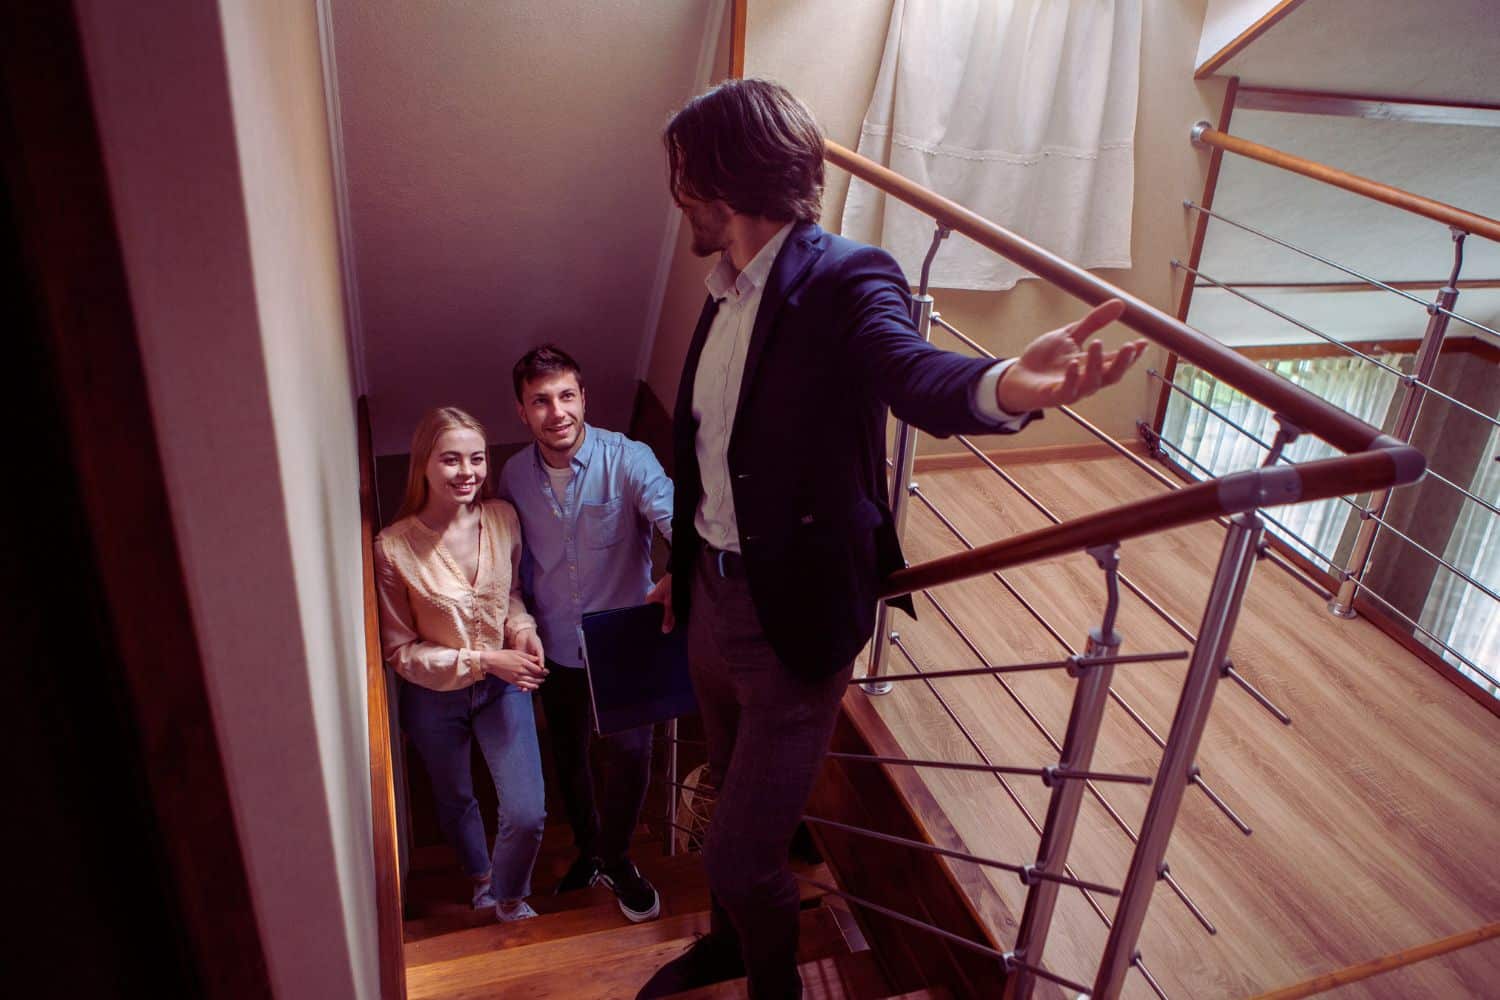 Une agente immobilière discutant avec un client potentiel devant une maison, illustrant l'approche révolutionnaire pour booster votre réussite en prospection immobilière.